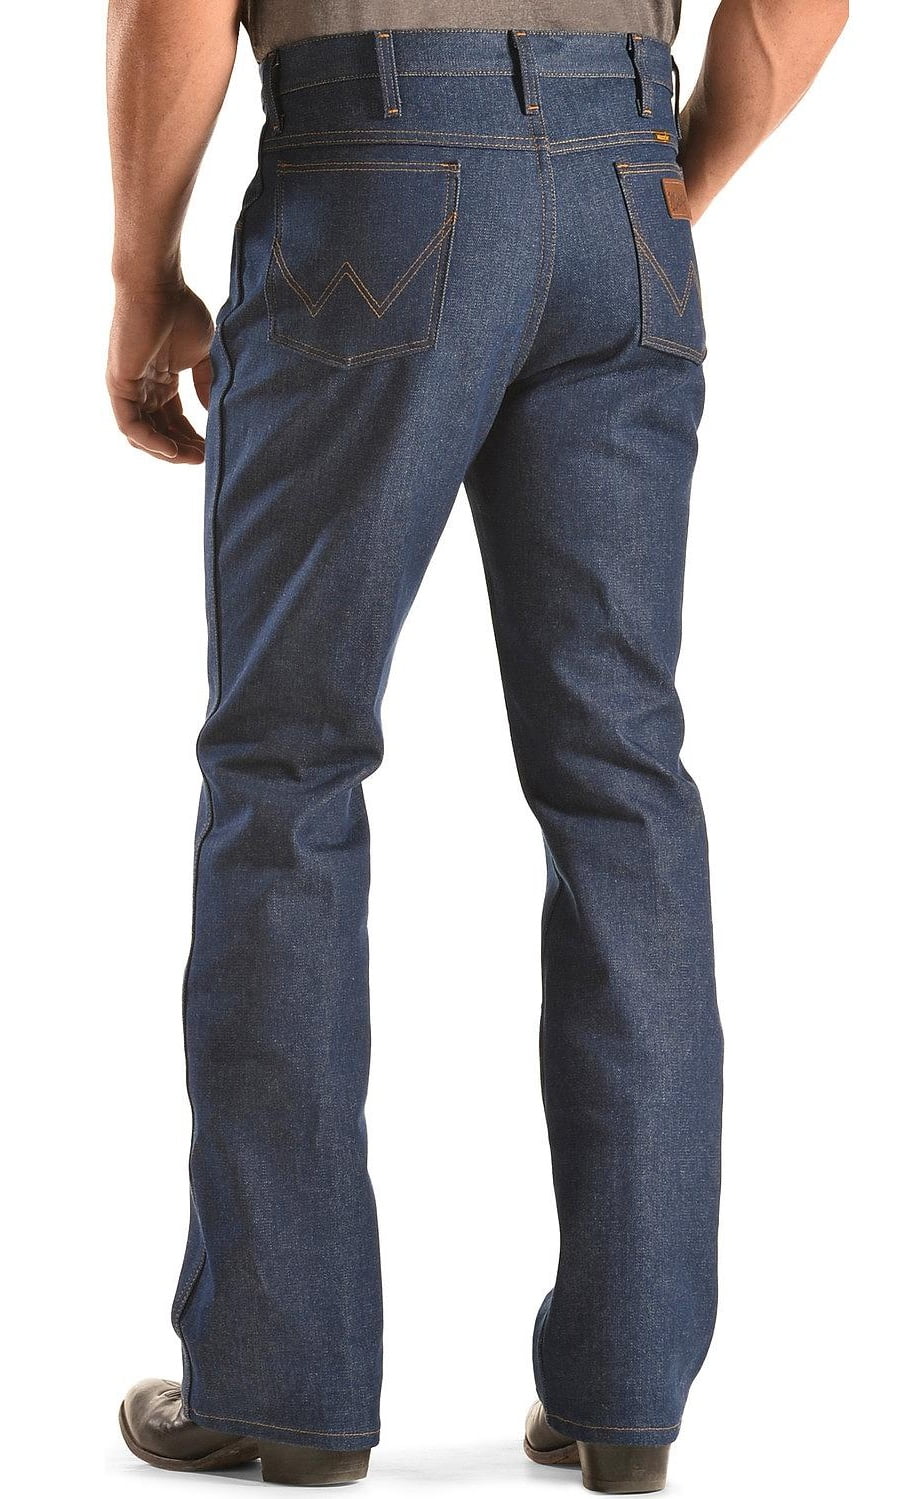 men's jeans boot cut